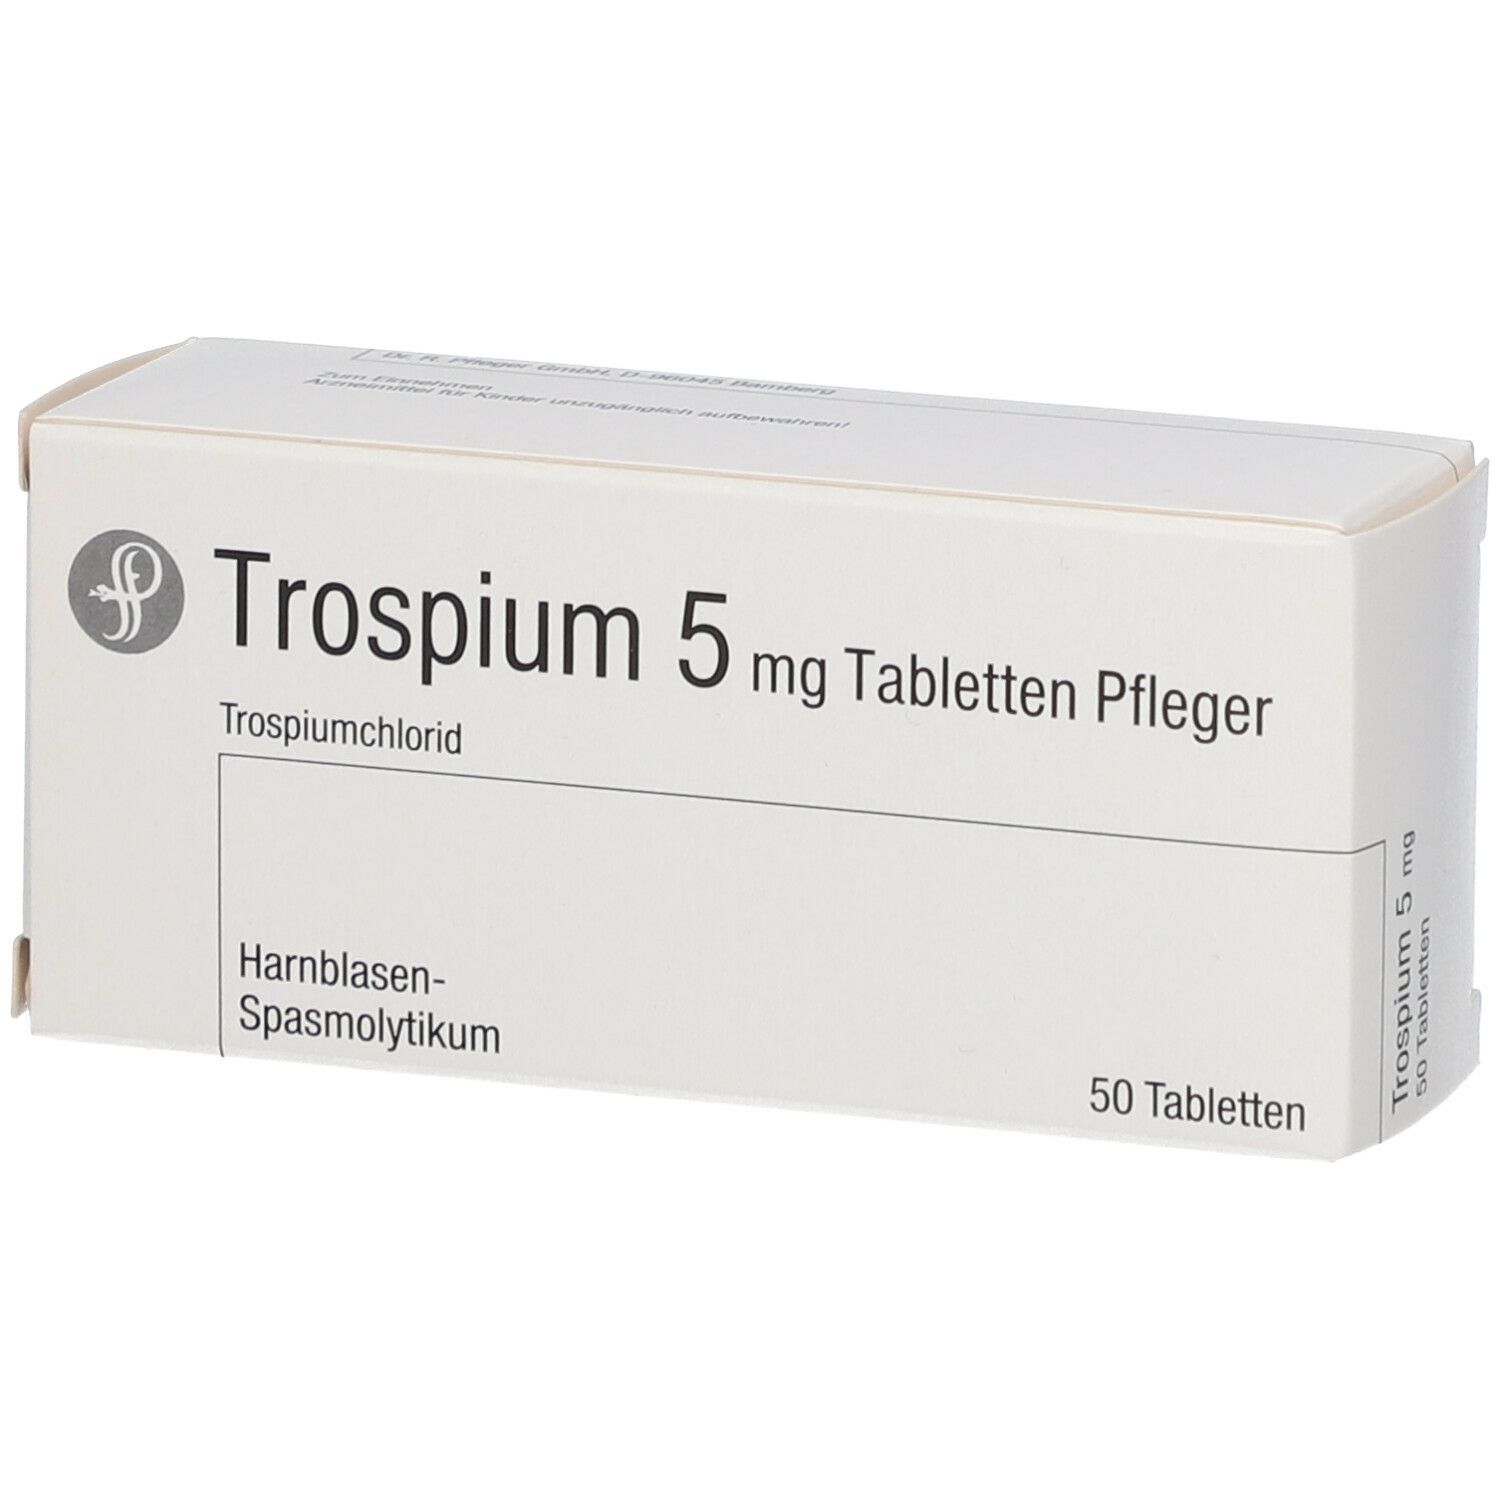 Trospium 5 mg  Pfleger